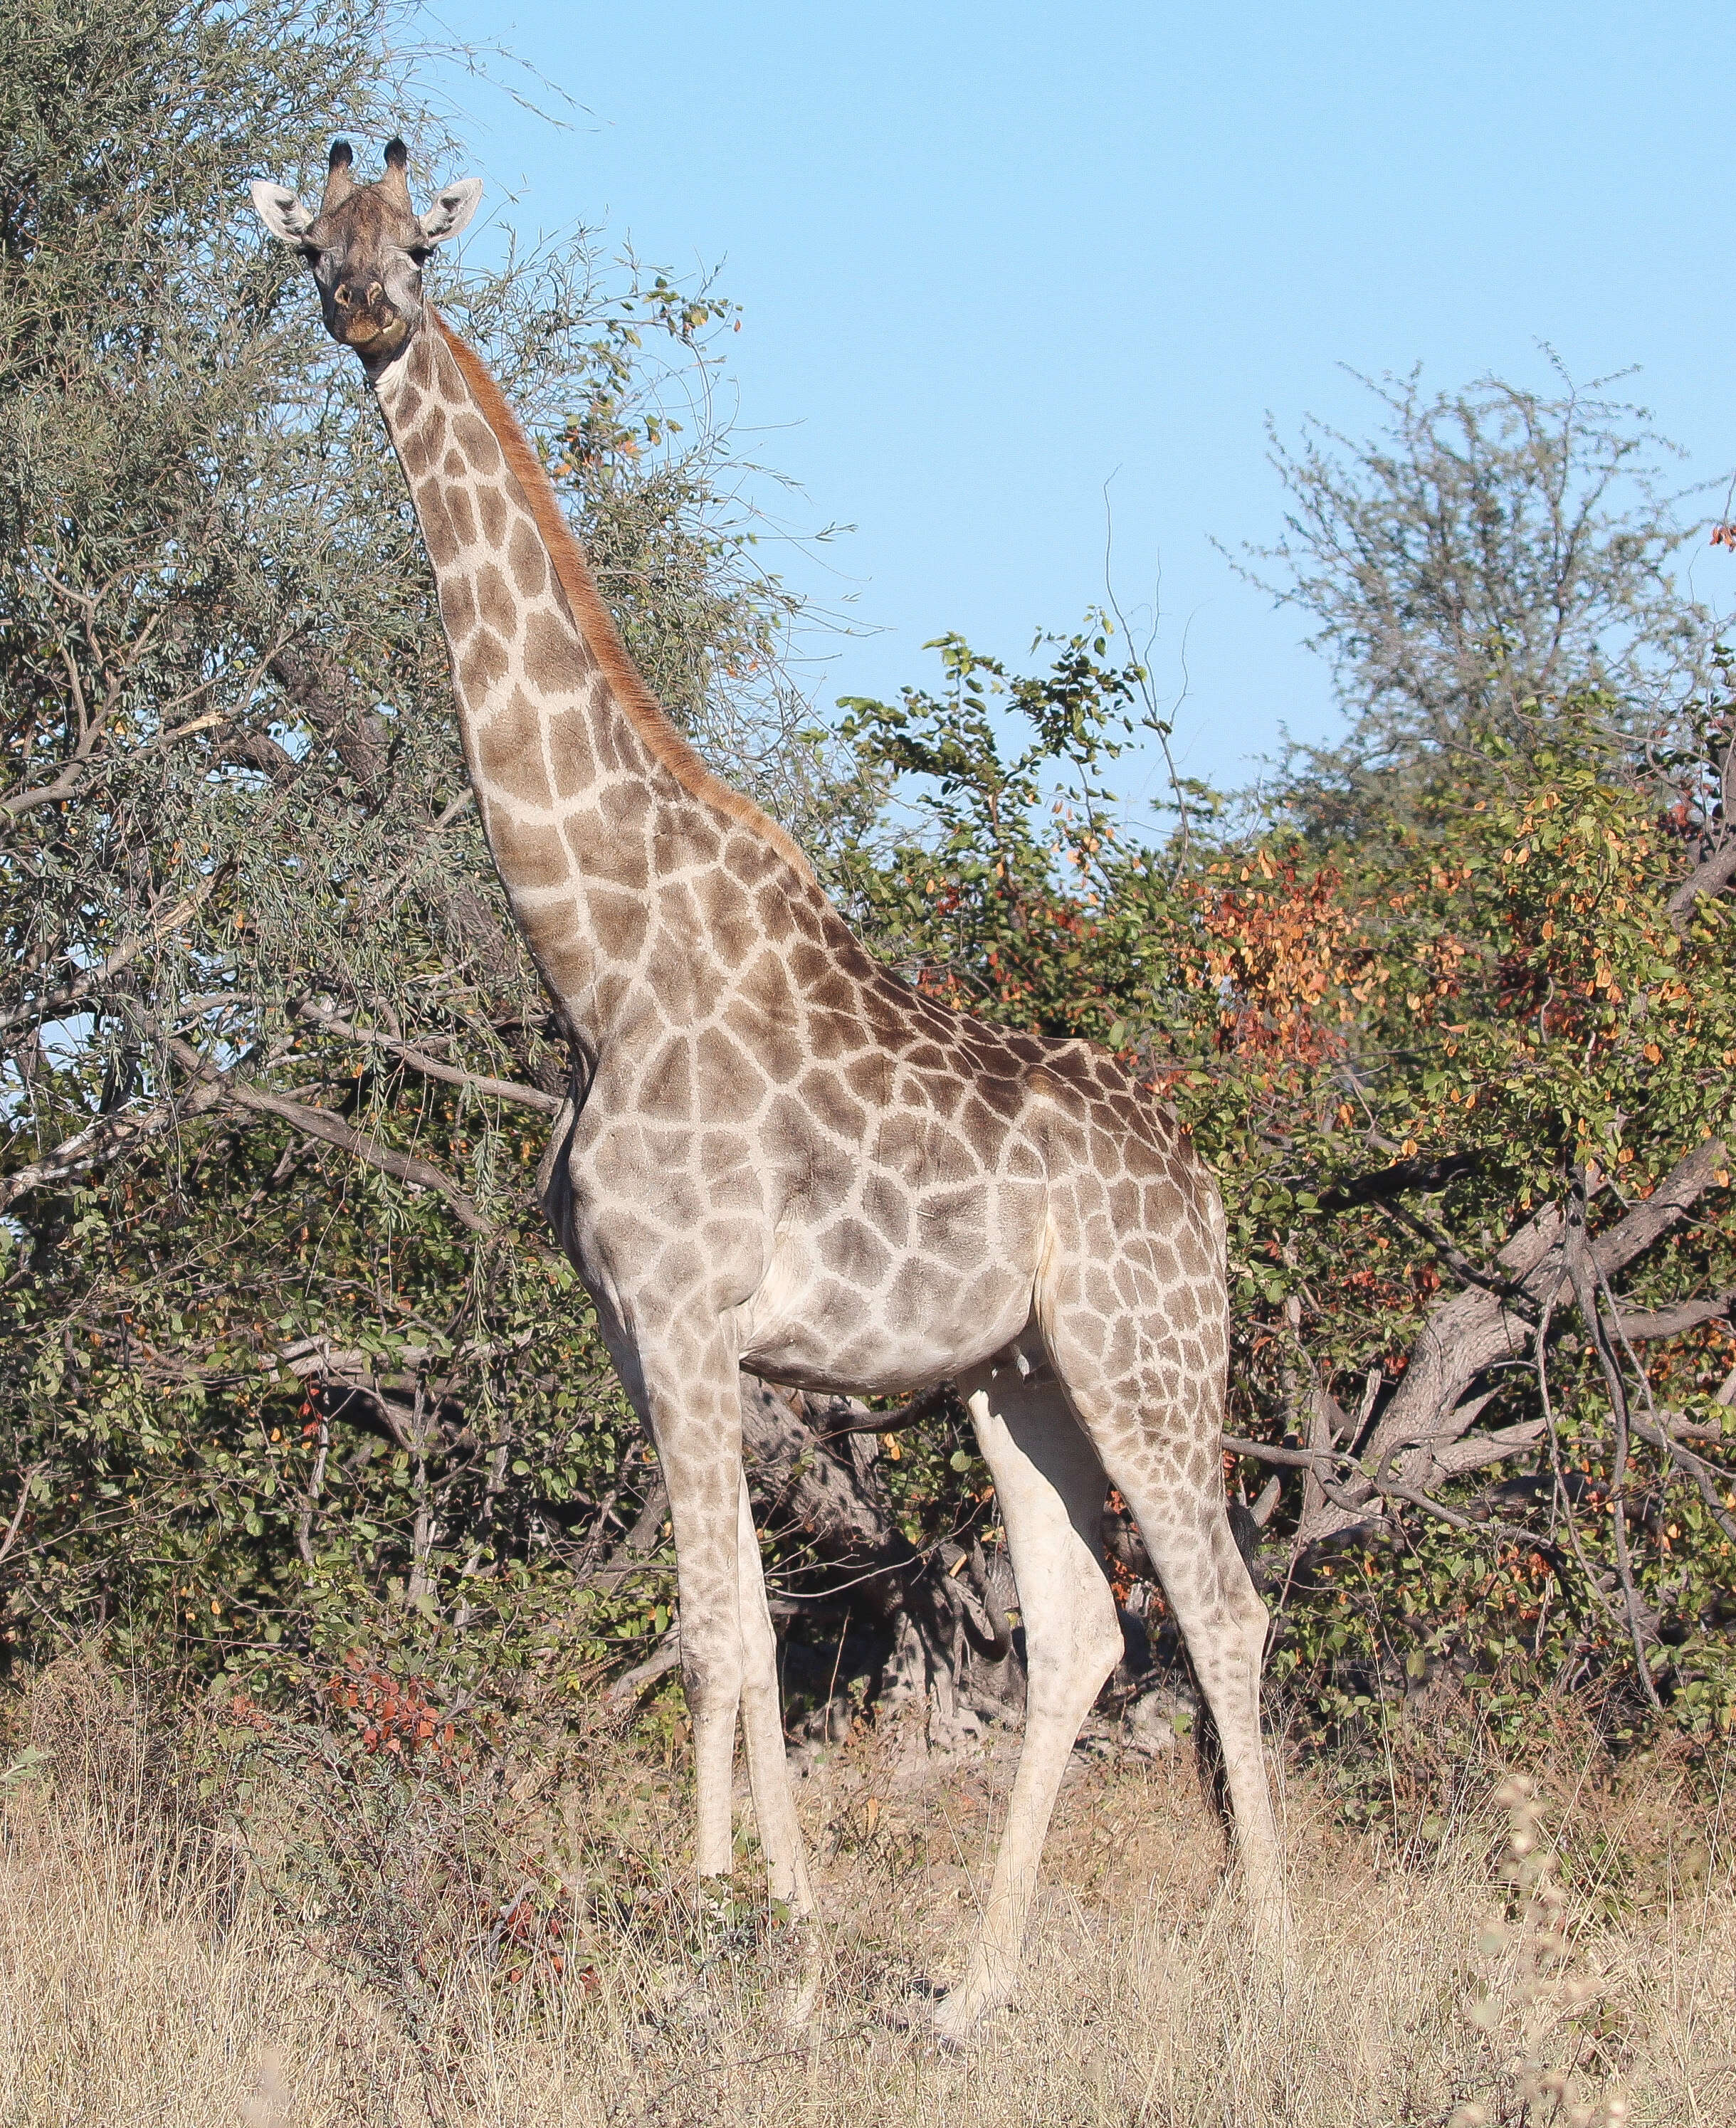 Image of Southern giraffe